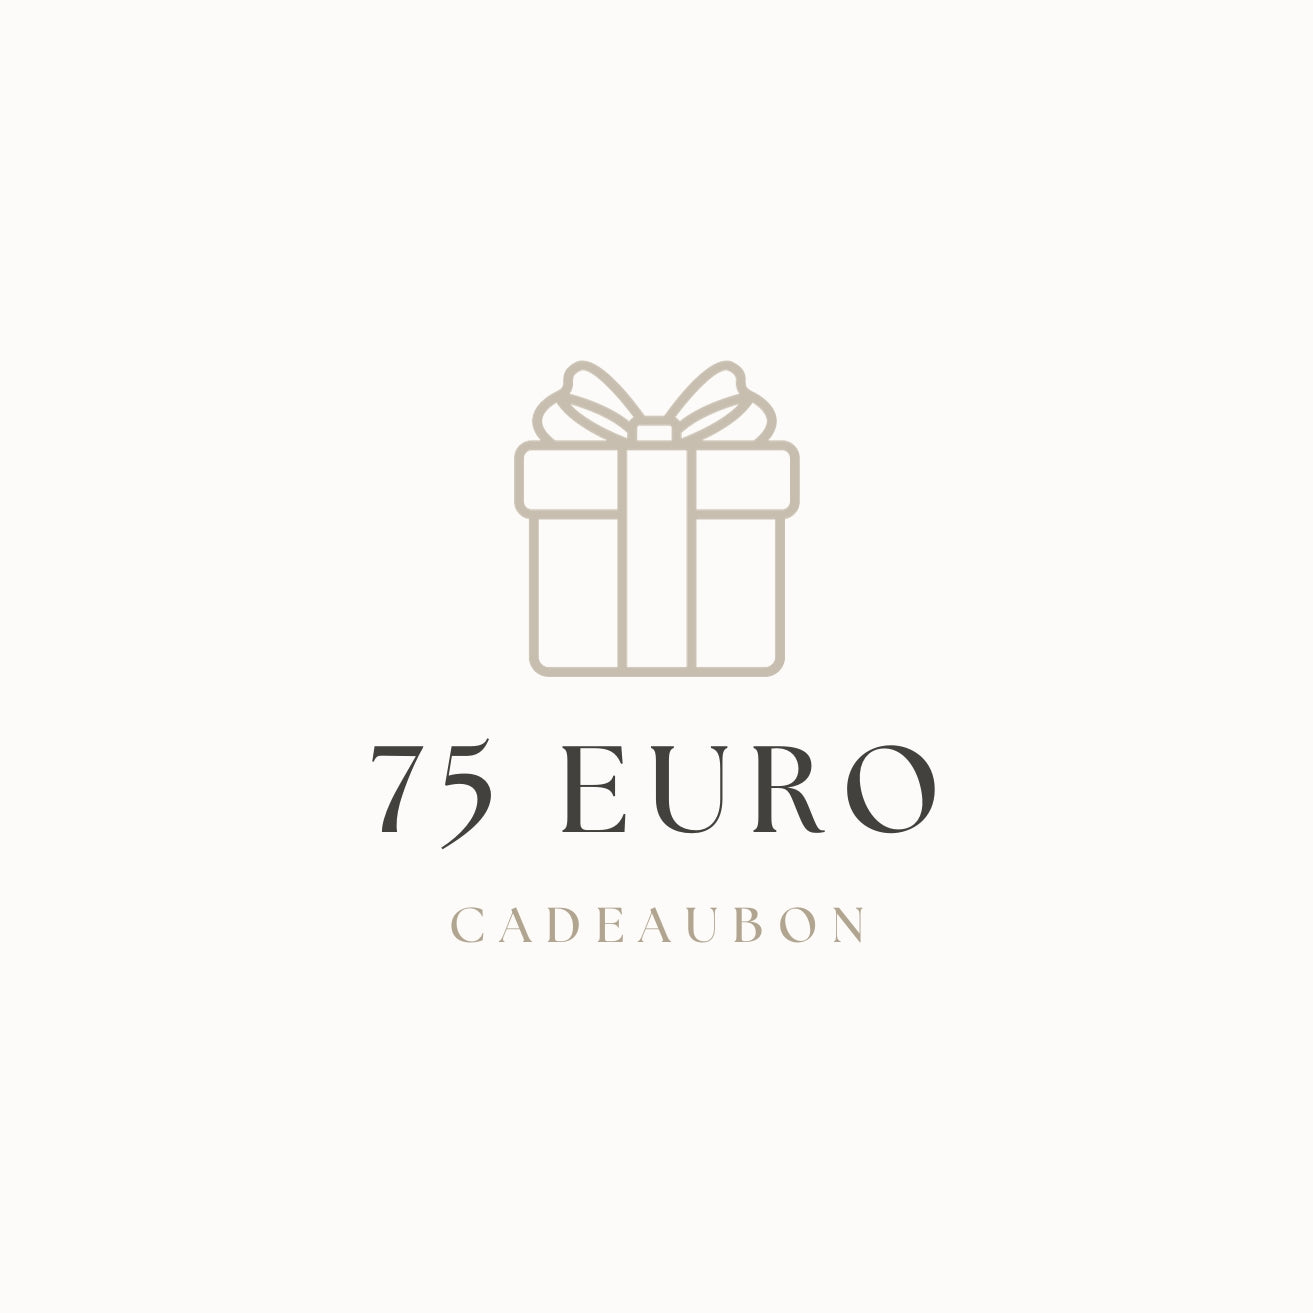 Chèque cadeau | 75 euros